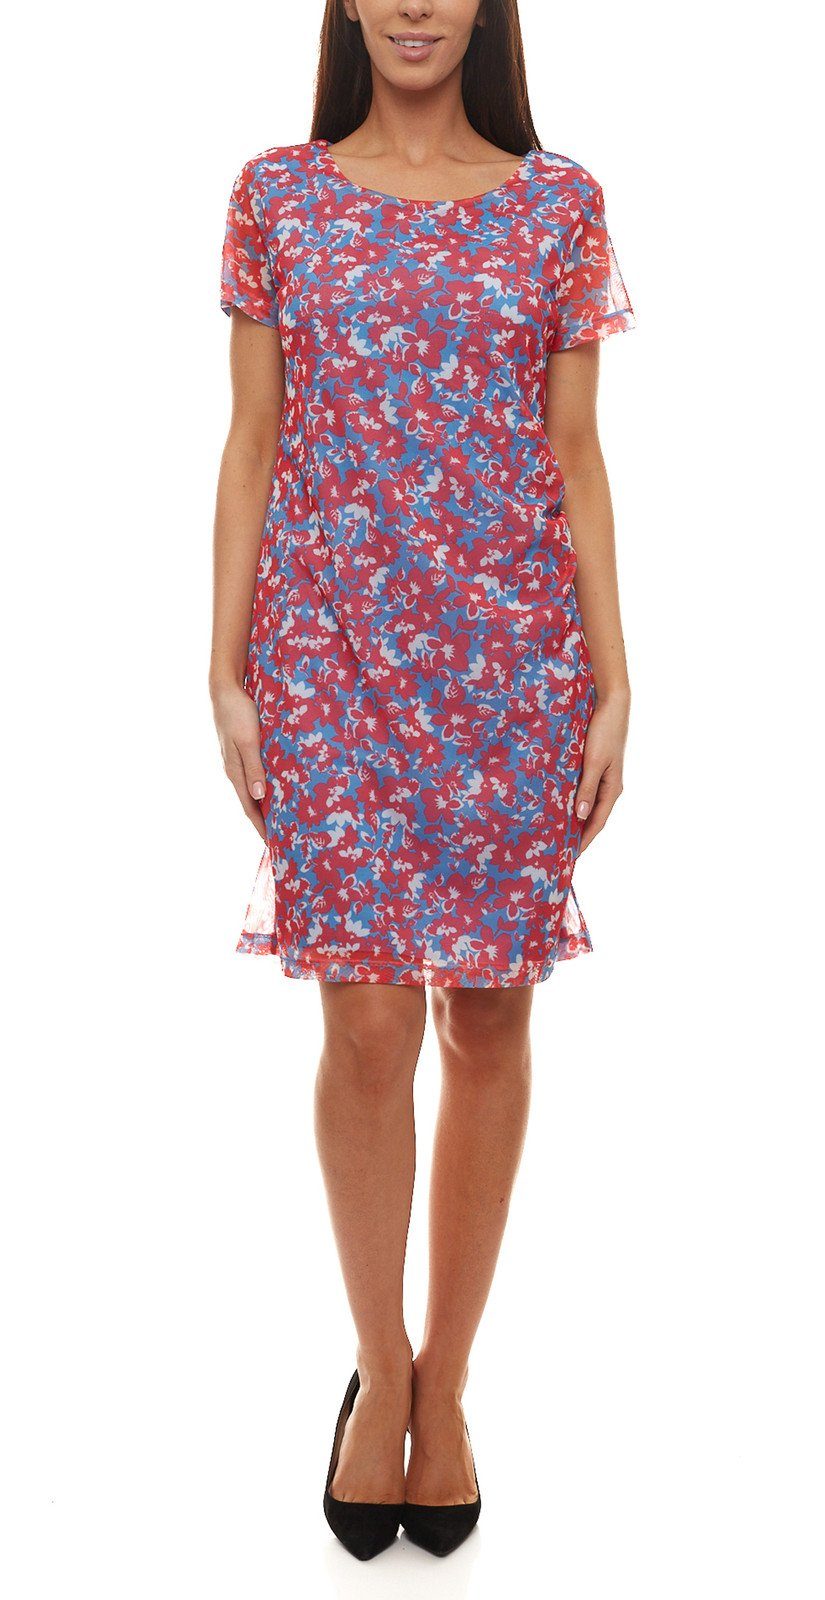 Aniston by BAUR Meshkleid Aniston SELECTED Mesh-Kleid florales Damen Mini- Kleid mit Rundhals-Ausschnitt Sommer-Kleid Rot/Blau